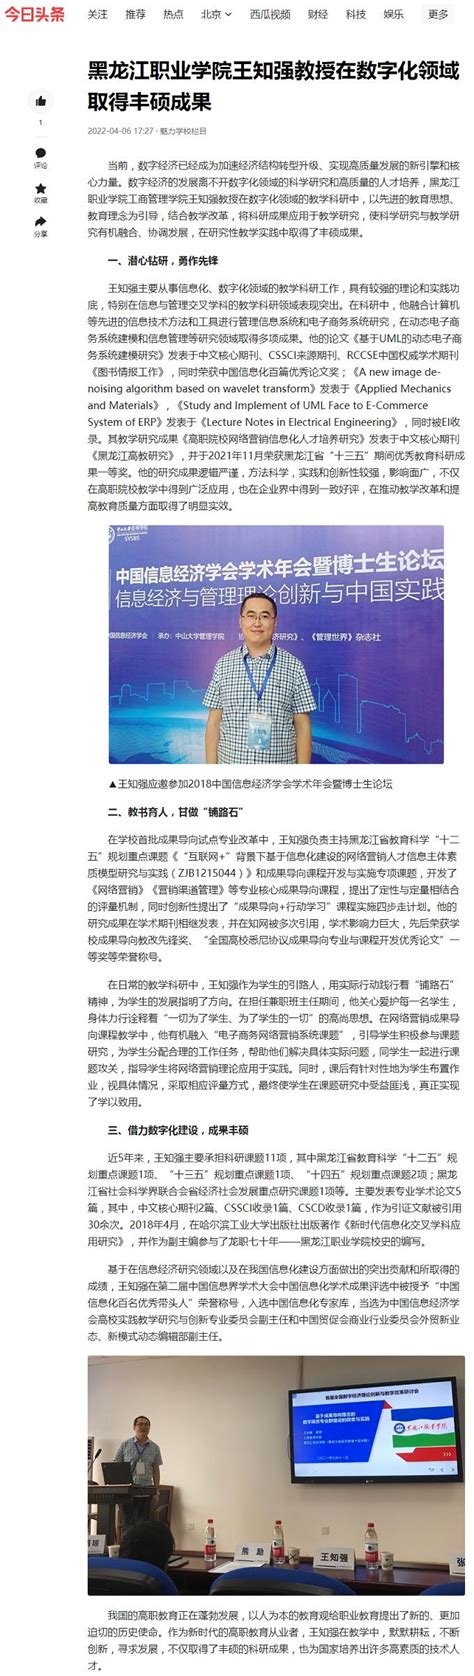 【今日头条】黑龙江职业学院王知强教授在数字化领域取得丰硕成果-黑龙江职业学院